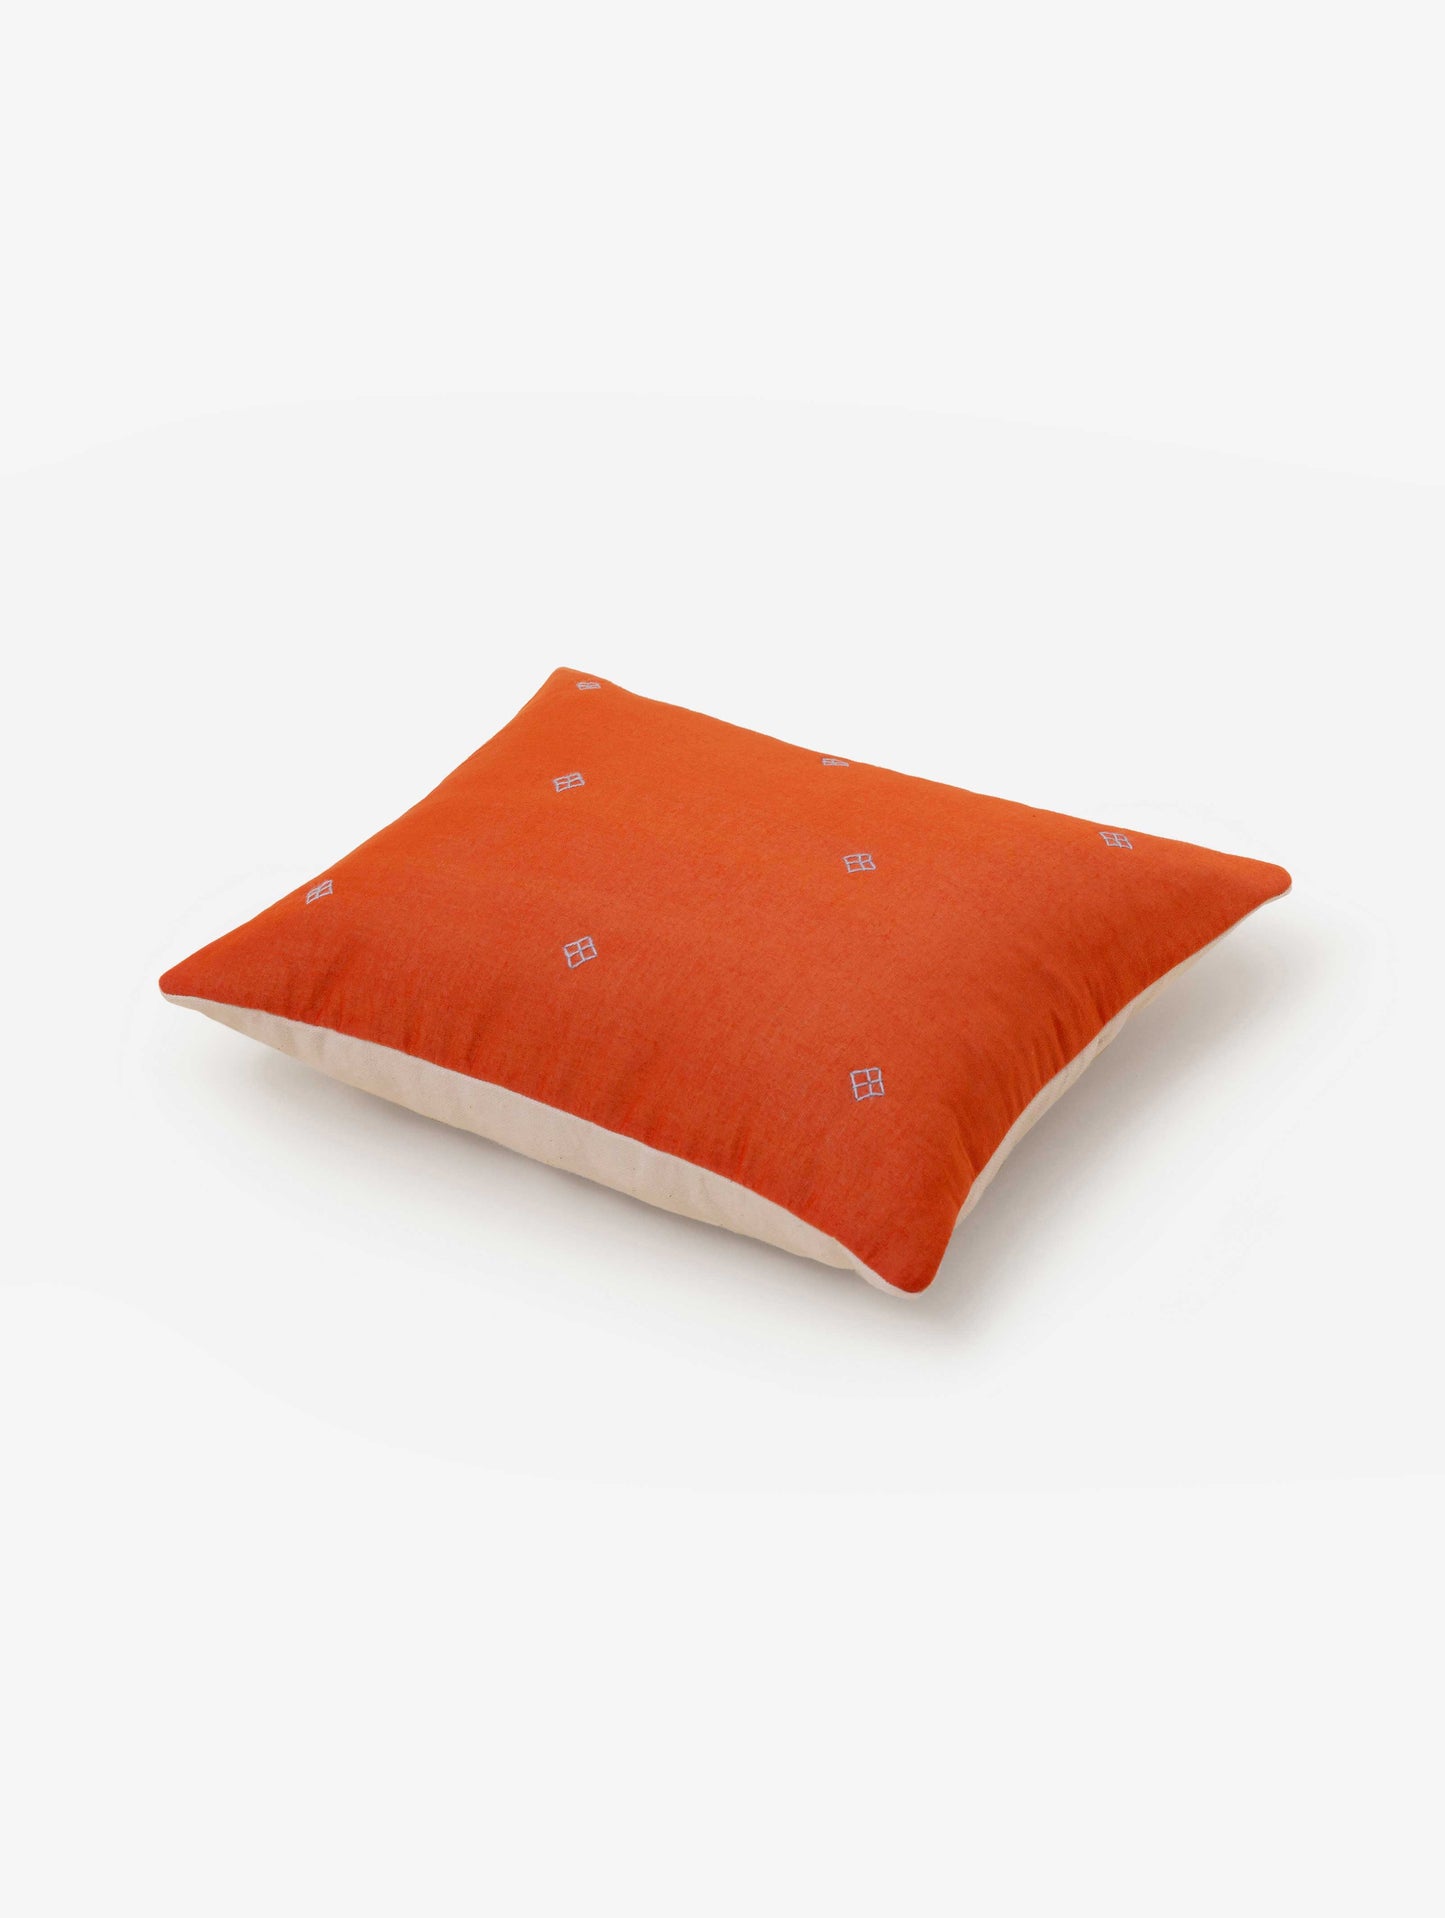 Bandook Pillowcase